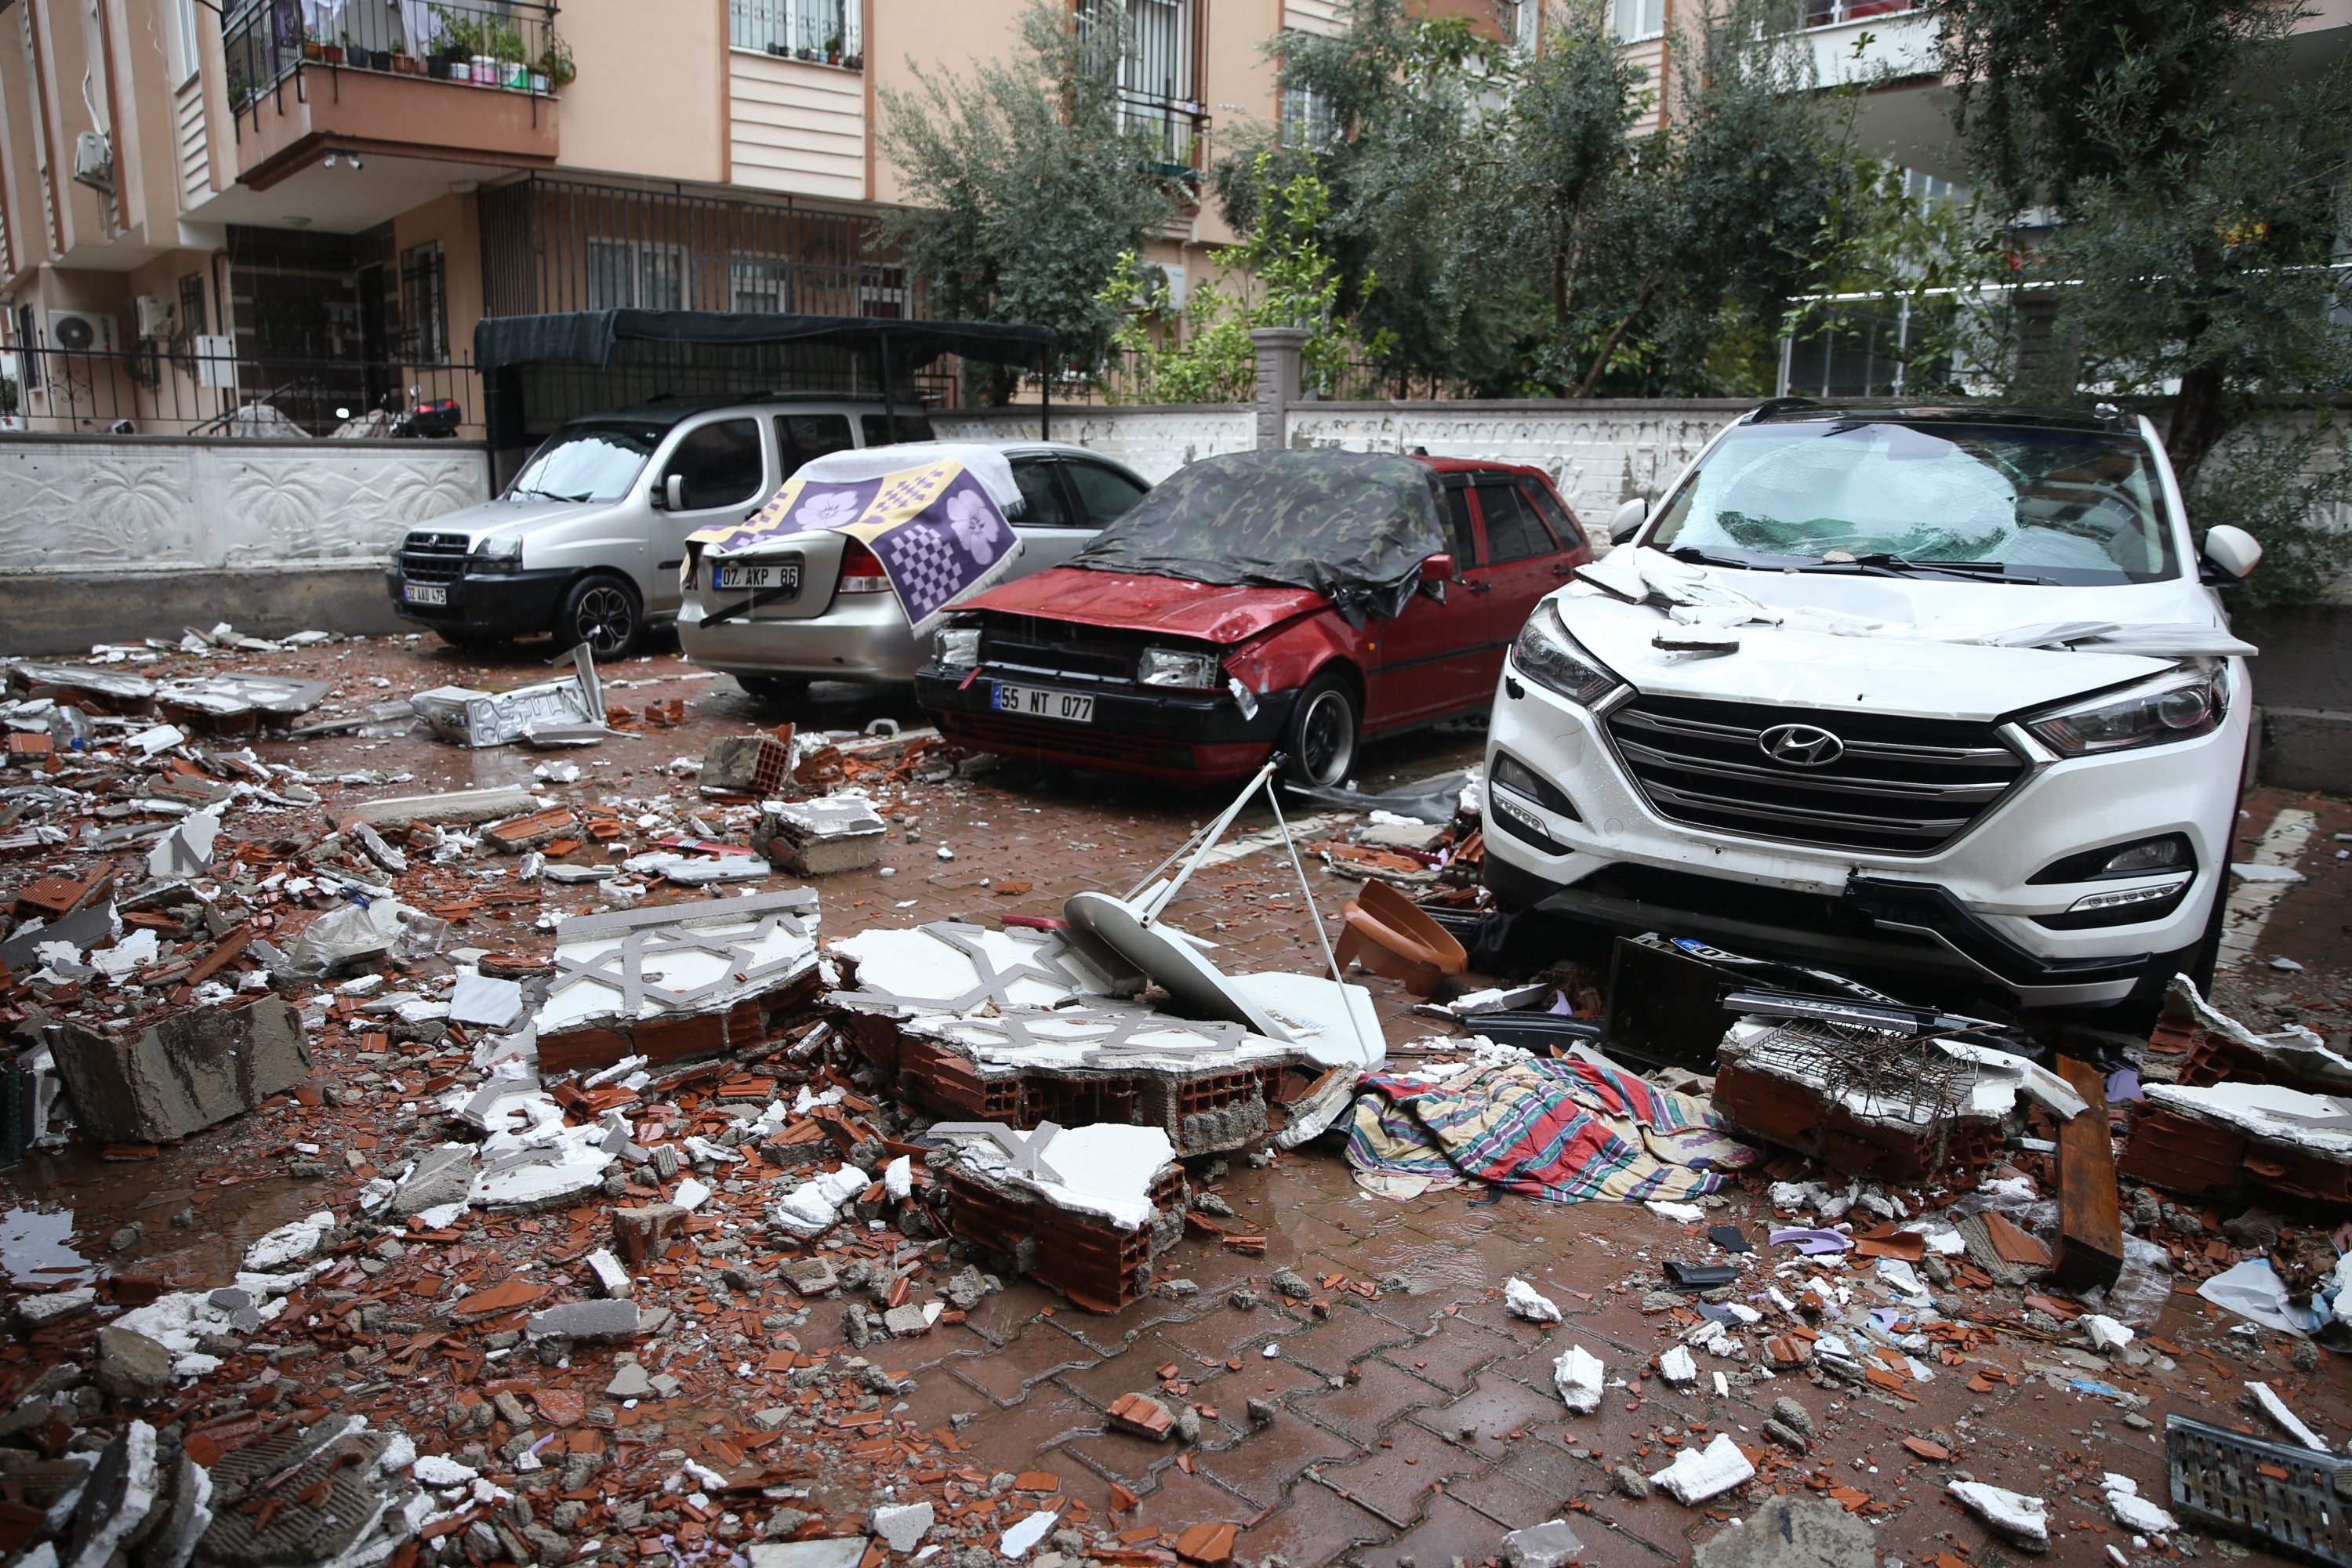 Mobil yang rusak terlihat setelah tertimpa benda jatuh dari atap di distrik Kepez di Antalya, Turki selatan, 30 Desember 2021. (AA Photo)